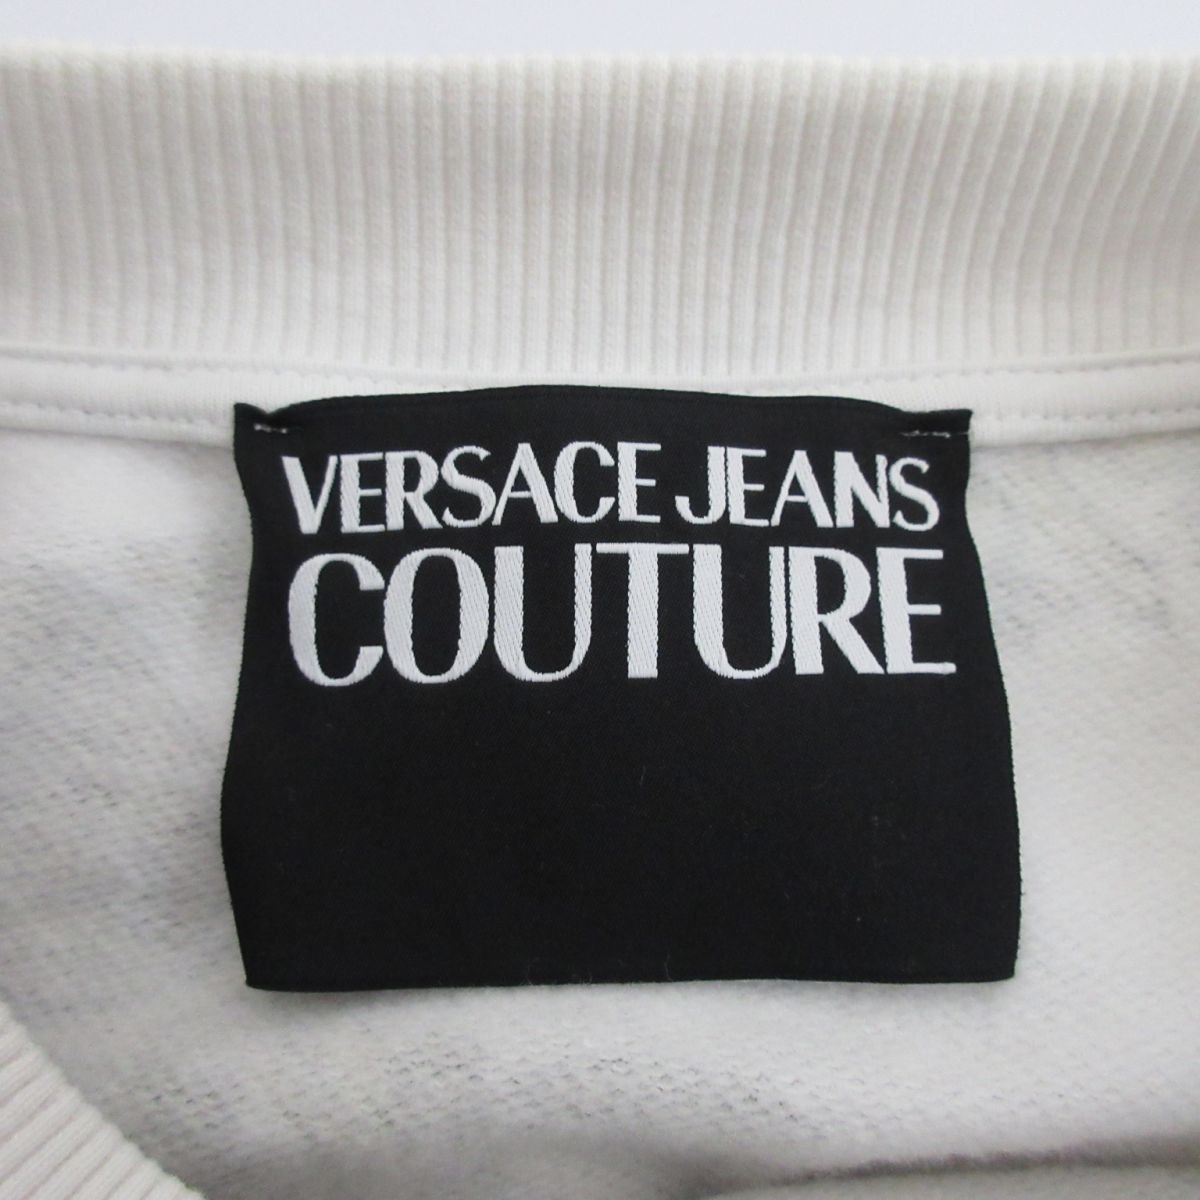  прекрасный товар VERSACE JEANS COUTURE Versace джинсы kchu-ruba блокировка рисунок обратная сторона ворсистый длинный рукав футболка тренировочный размер S многоцветный 